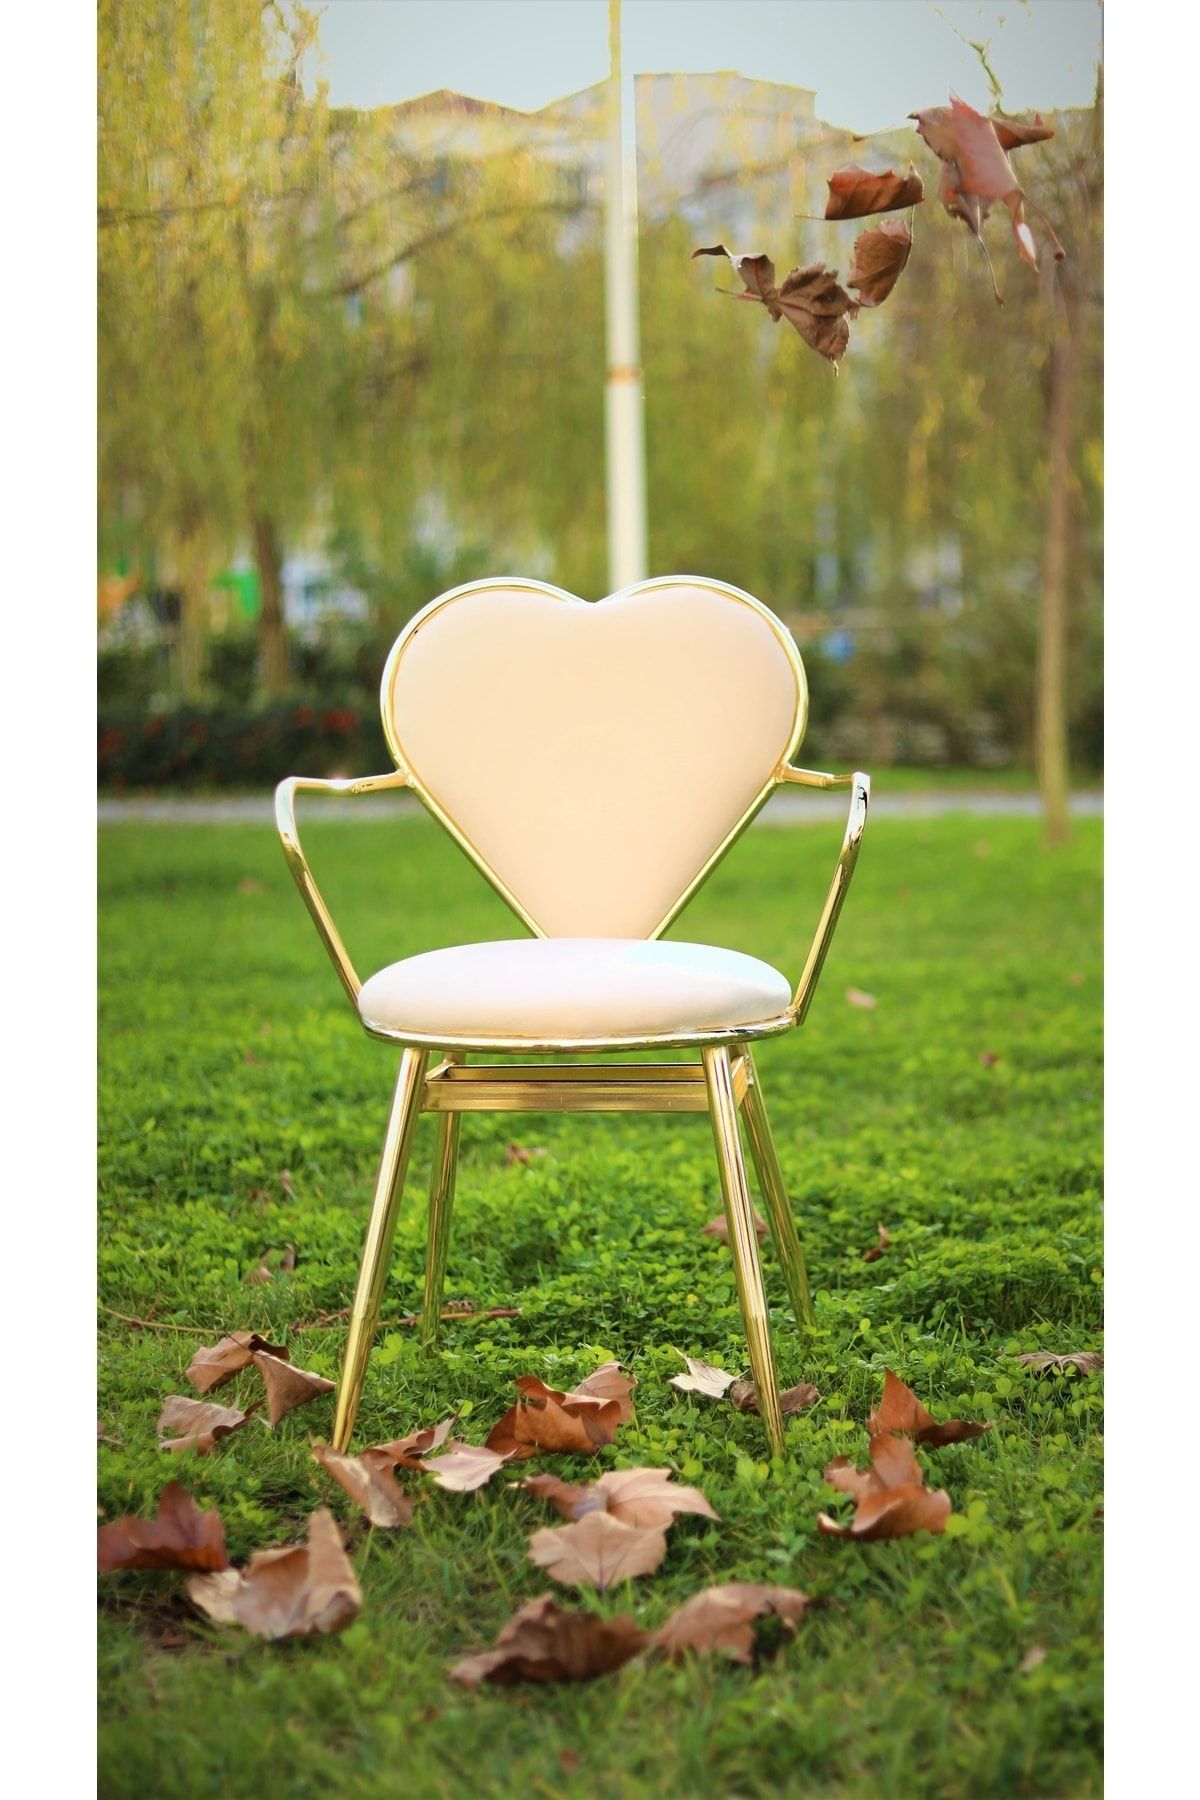 J&S QUALİTY Montaj Gerektirmez Hazır Makyaj Sandalye Parlak Altın Rengi Sandalye, Yatak Odası, Çeyiz,kalp